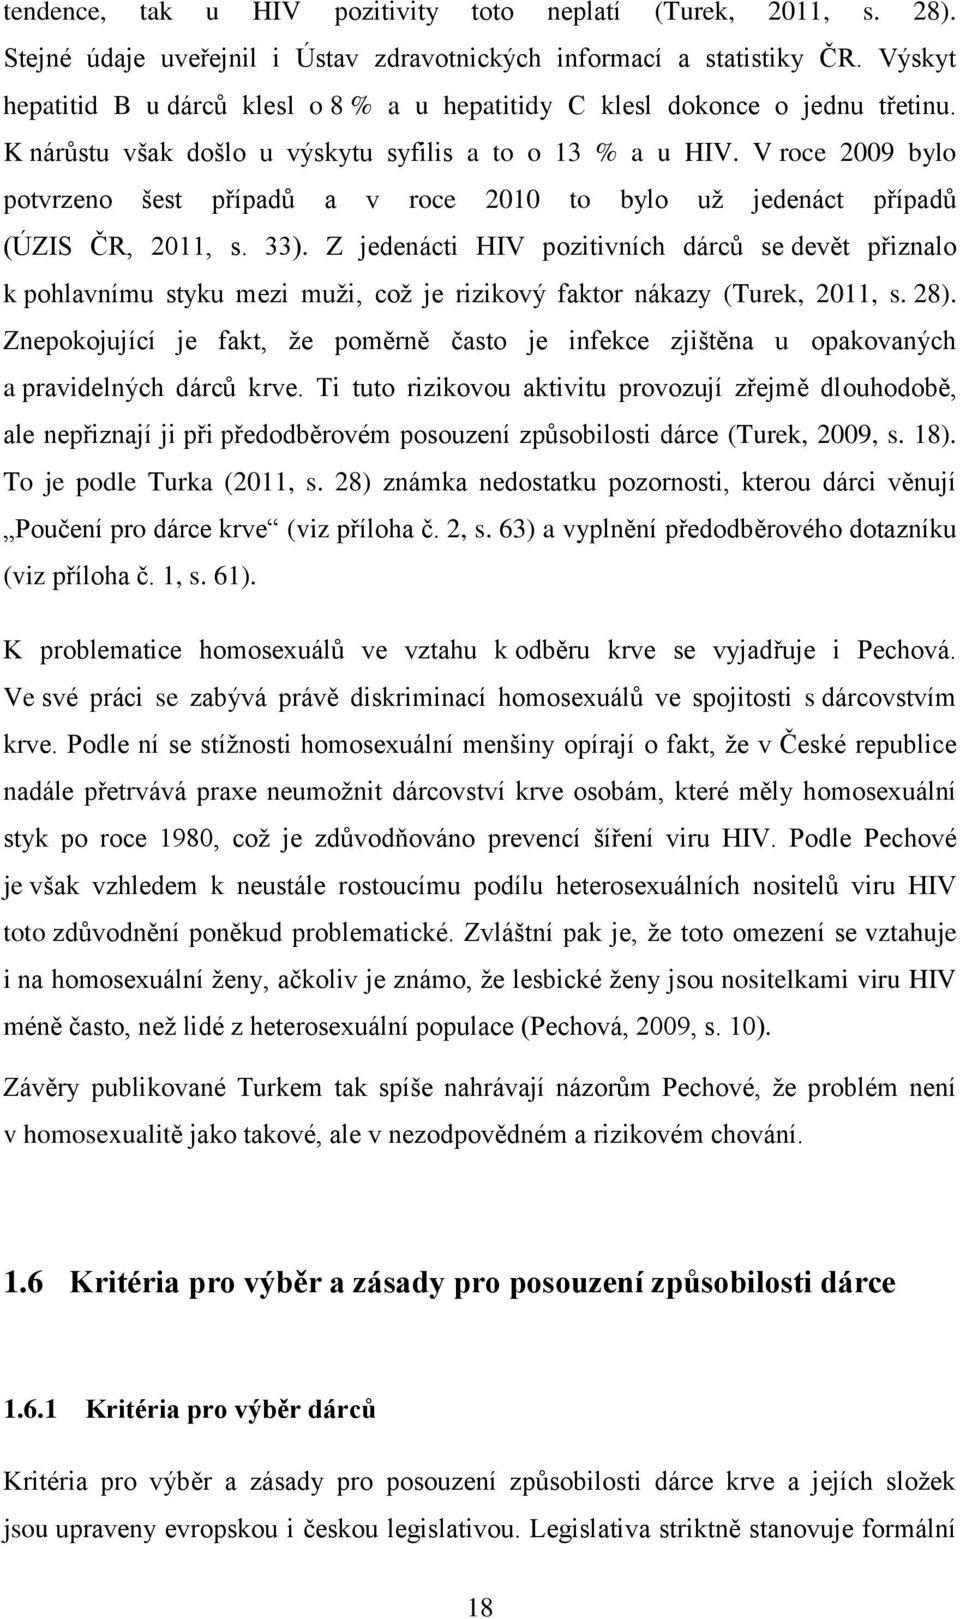 V roce 2009 bylo potvrzeno šest případů a v roce 2010 to bylo už jedenáct případů (ÚZIS ČR, 2011, s. 33).